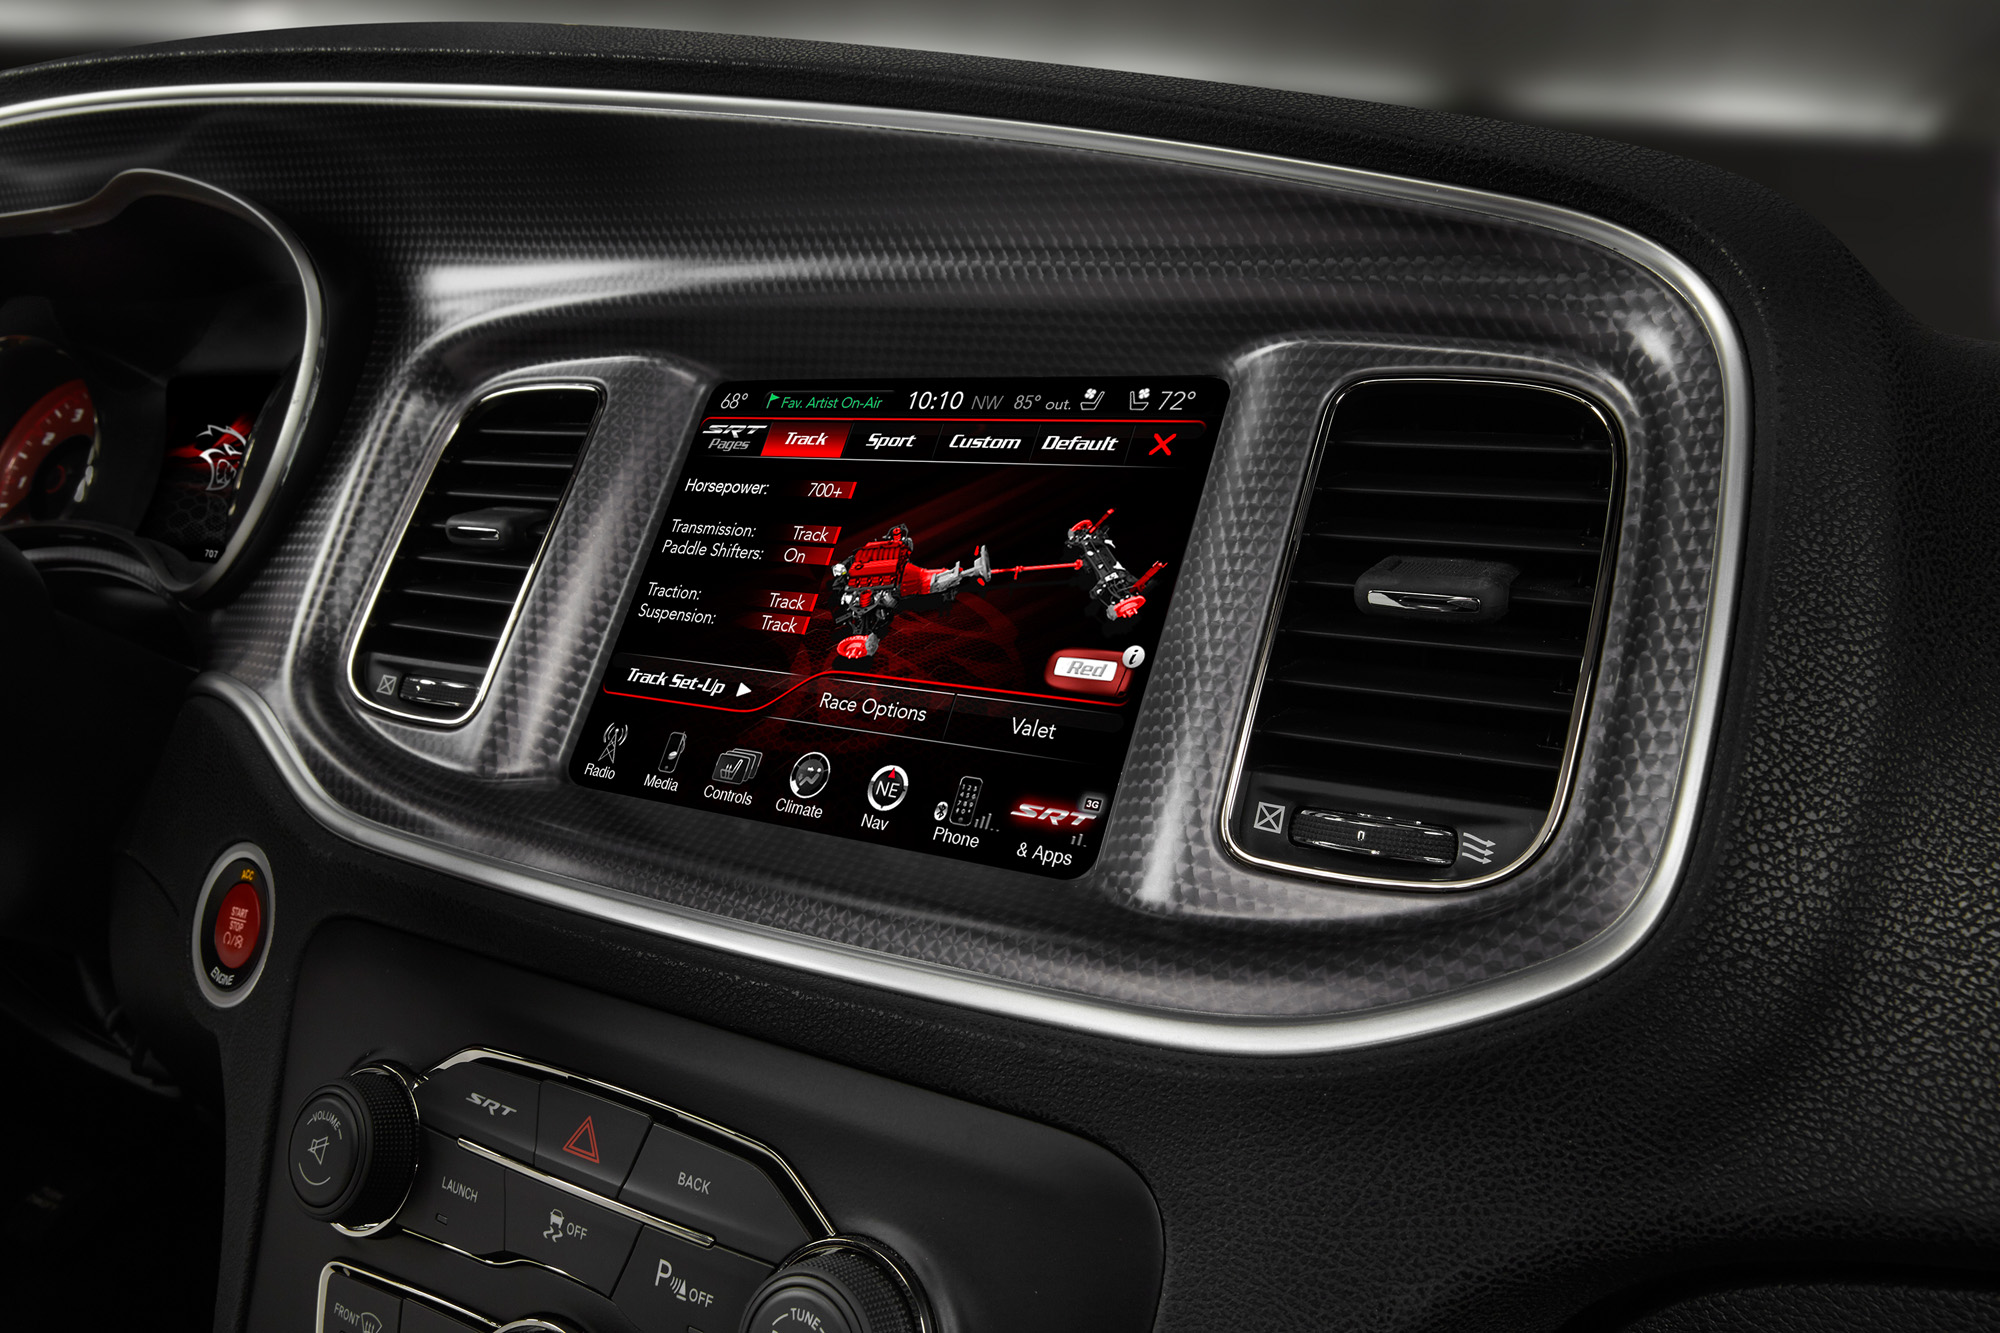 2015 Dodge Charger SRT - Track Setup screen